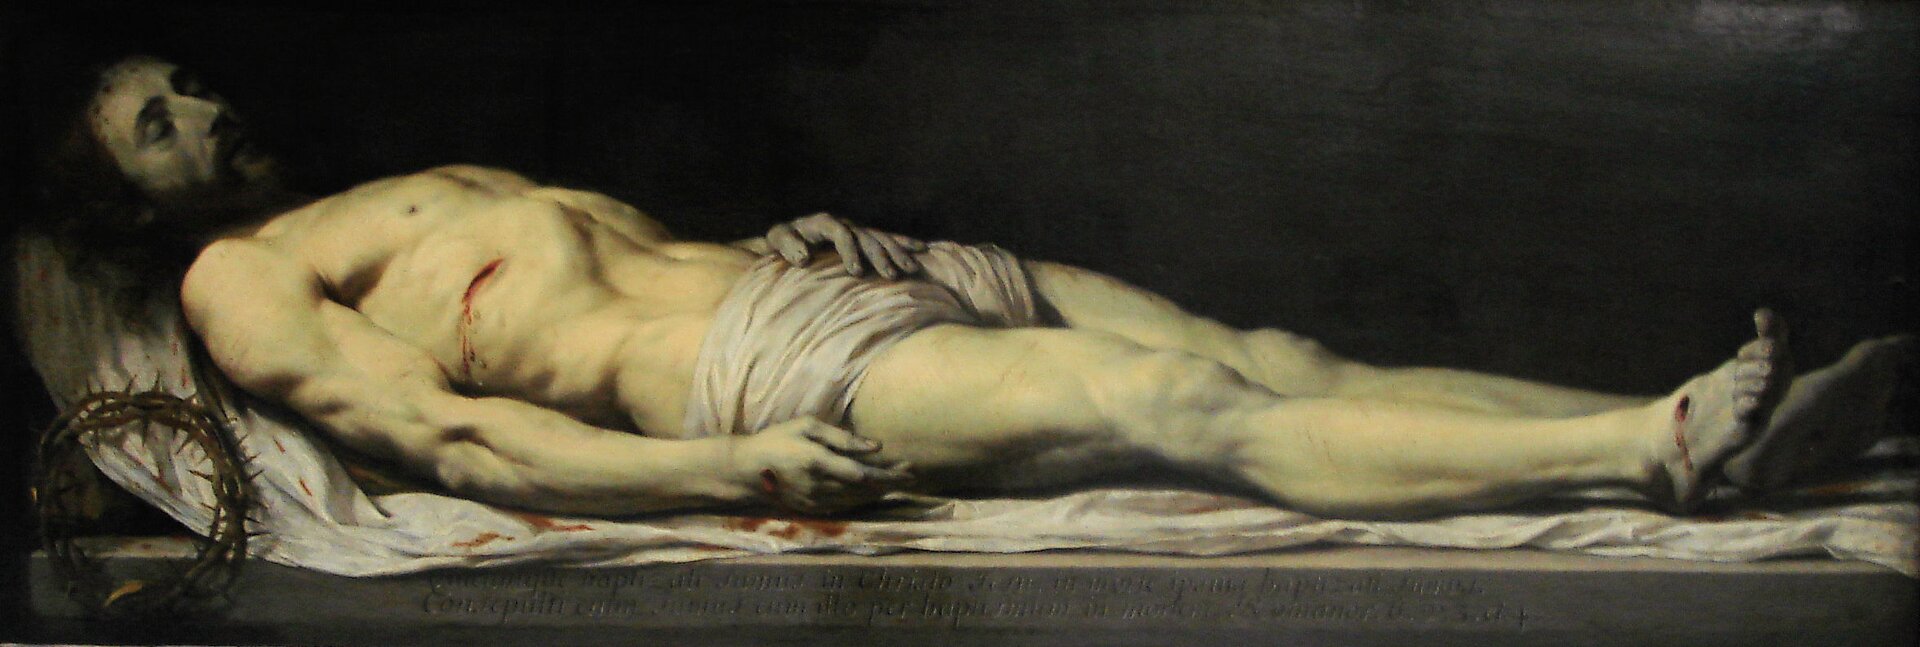 Ilustracja przedstawia obraz Philippe de Champaigne „Martwy Chrystus złożony na całunie”. Na obrazie znajduje się martwy Chrystus. Mężczyzna jest półnagi, w pasie ma jedynie kawałek materiału. Postać leży na białym płótnie. Widoczne są rany na jego dłoniach oraz stopach, z których wypływa krew. Po lewej stronie obrazu znajduje się korona cierniowa.